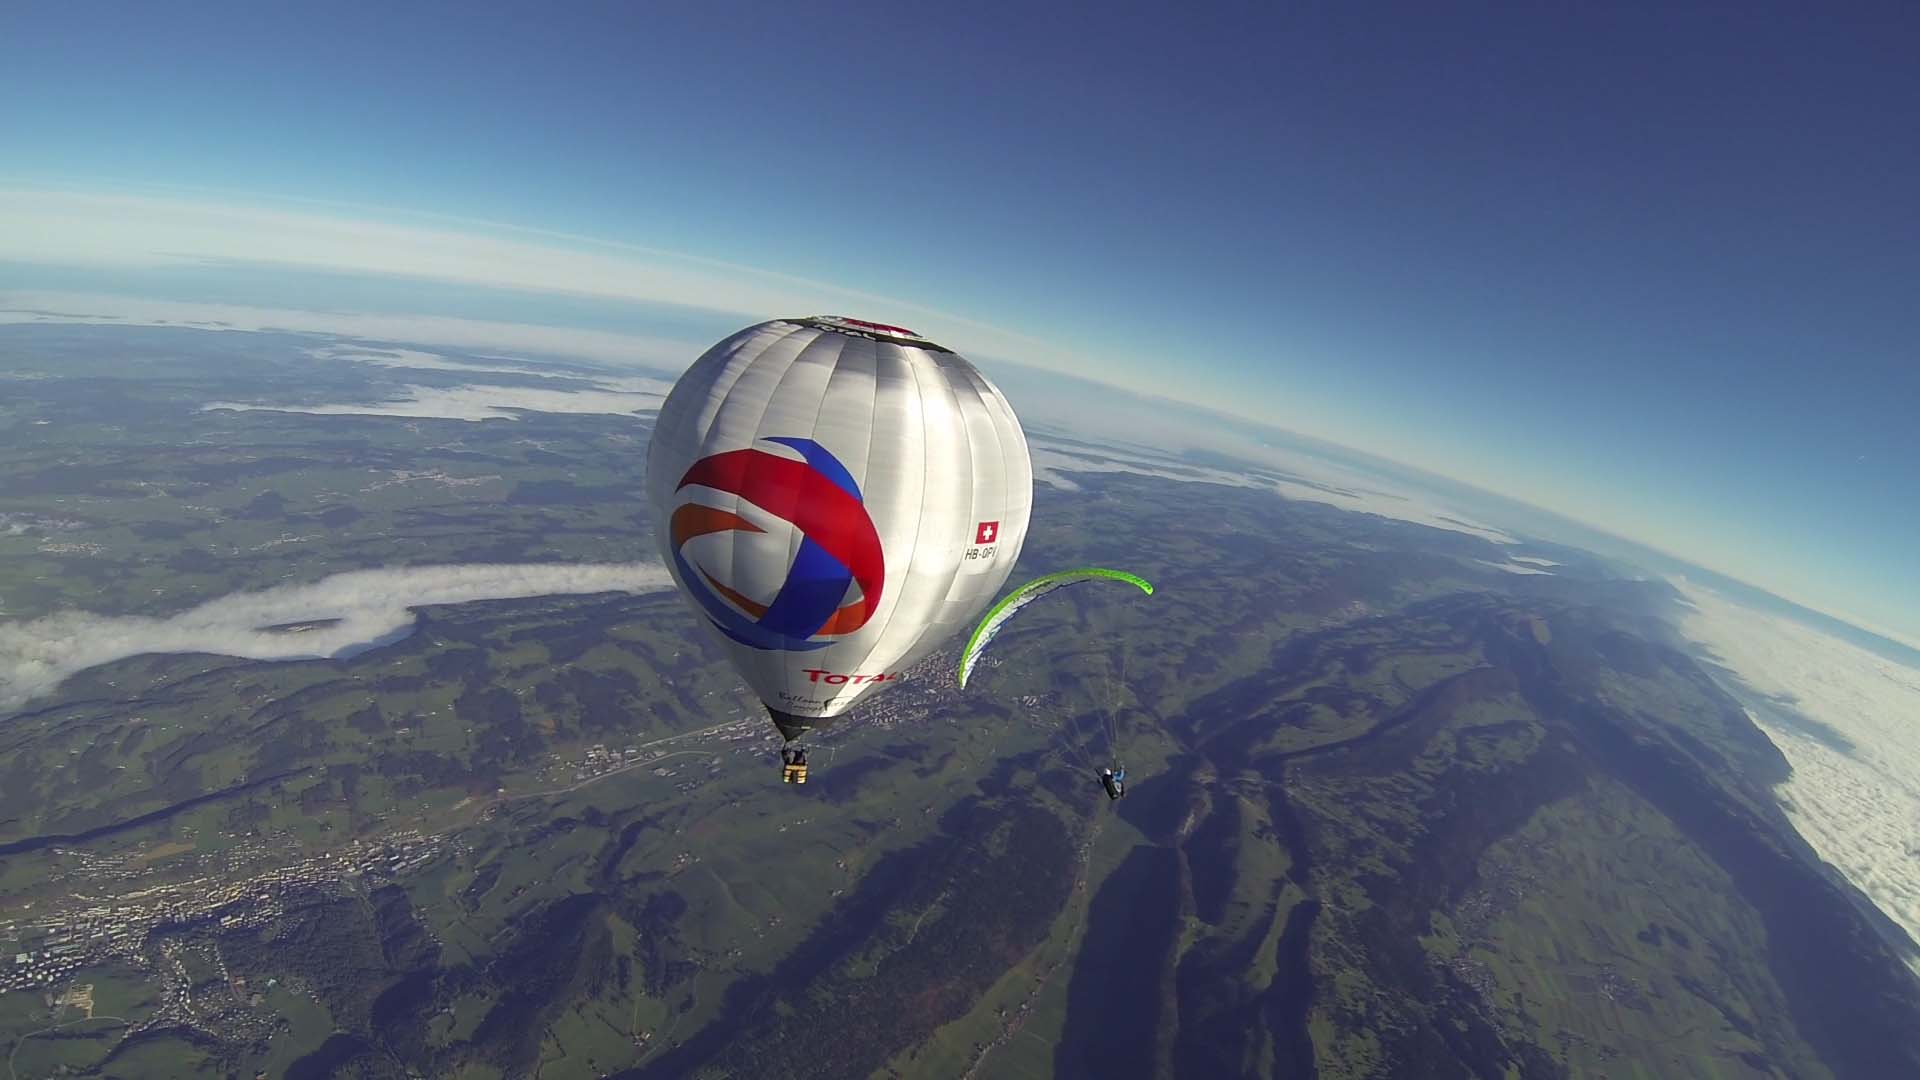 C'est probablement une première suisse. Dimanche, deux parapentistes ont été largués depuis un ballon à air chaud depuis une altitude de 6'000m, au-dessus de La Chaux-de-Fonds.